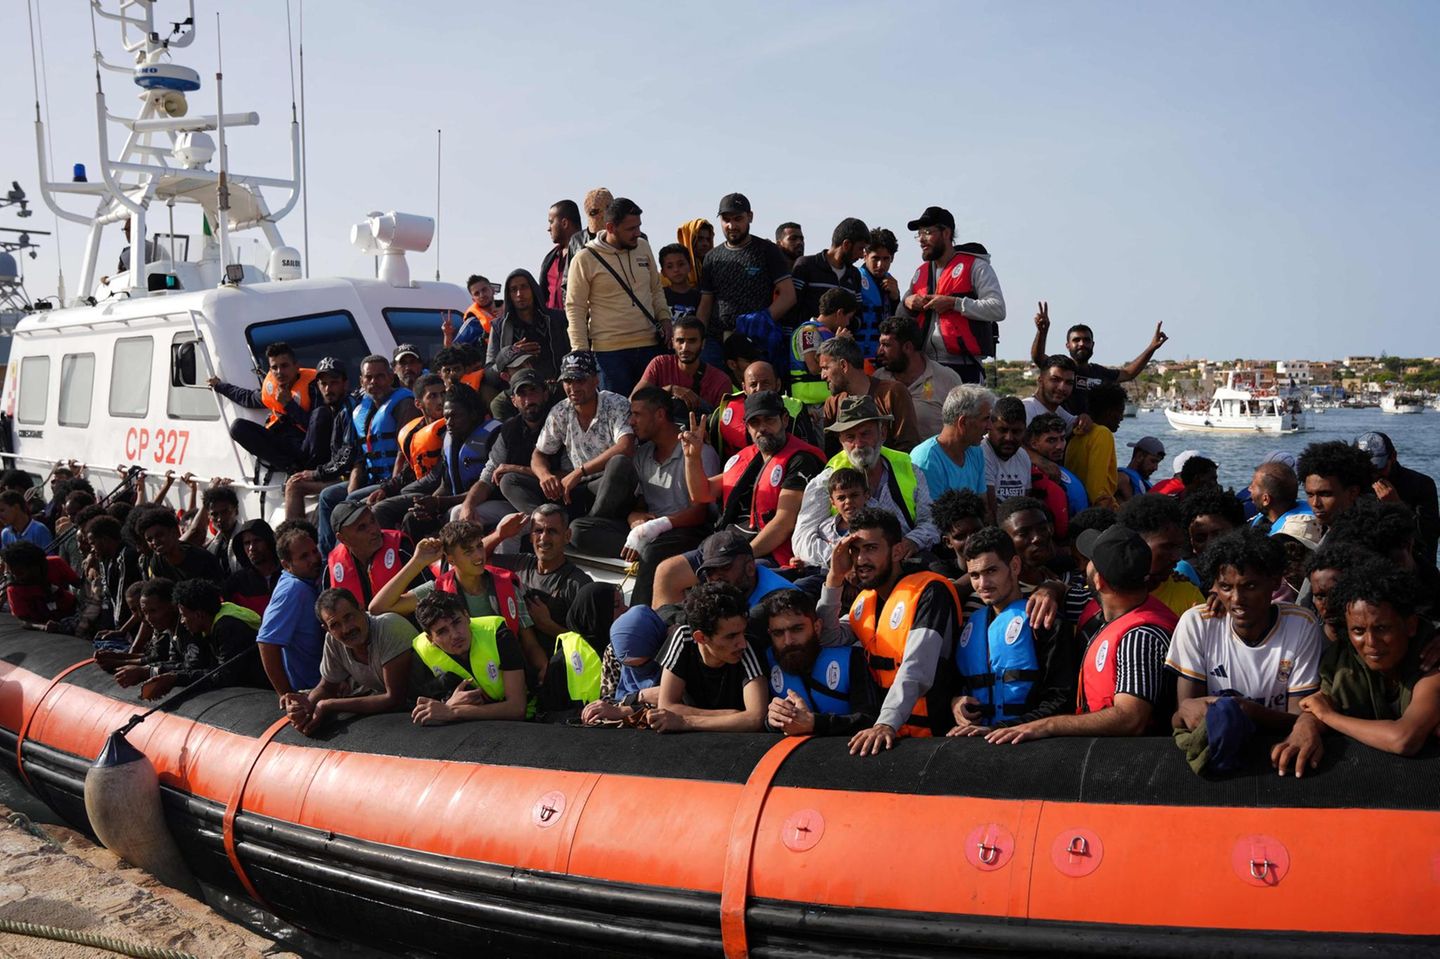 Immer mehr Flüchtlinge kommen nach Europa – wie geht es in der Migrationspolitik weiter?￼